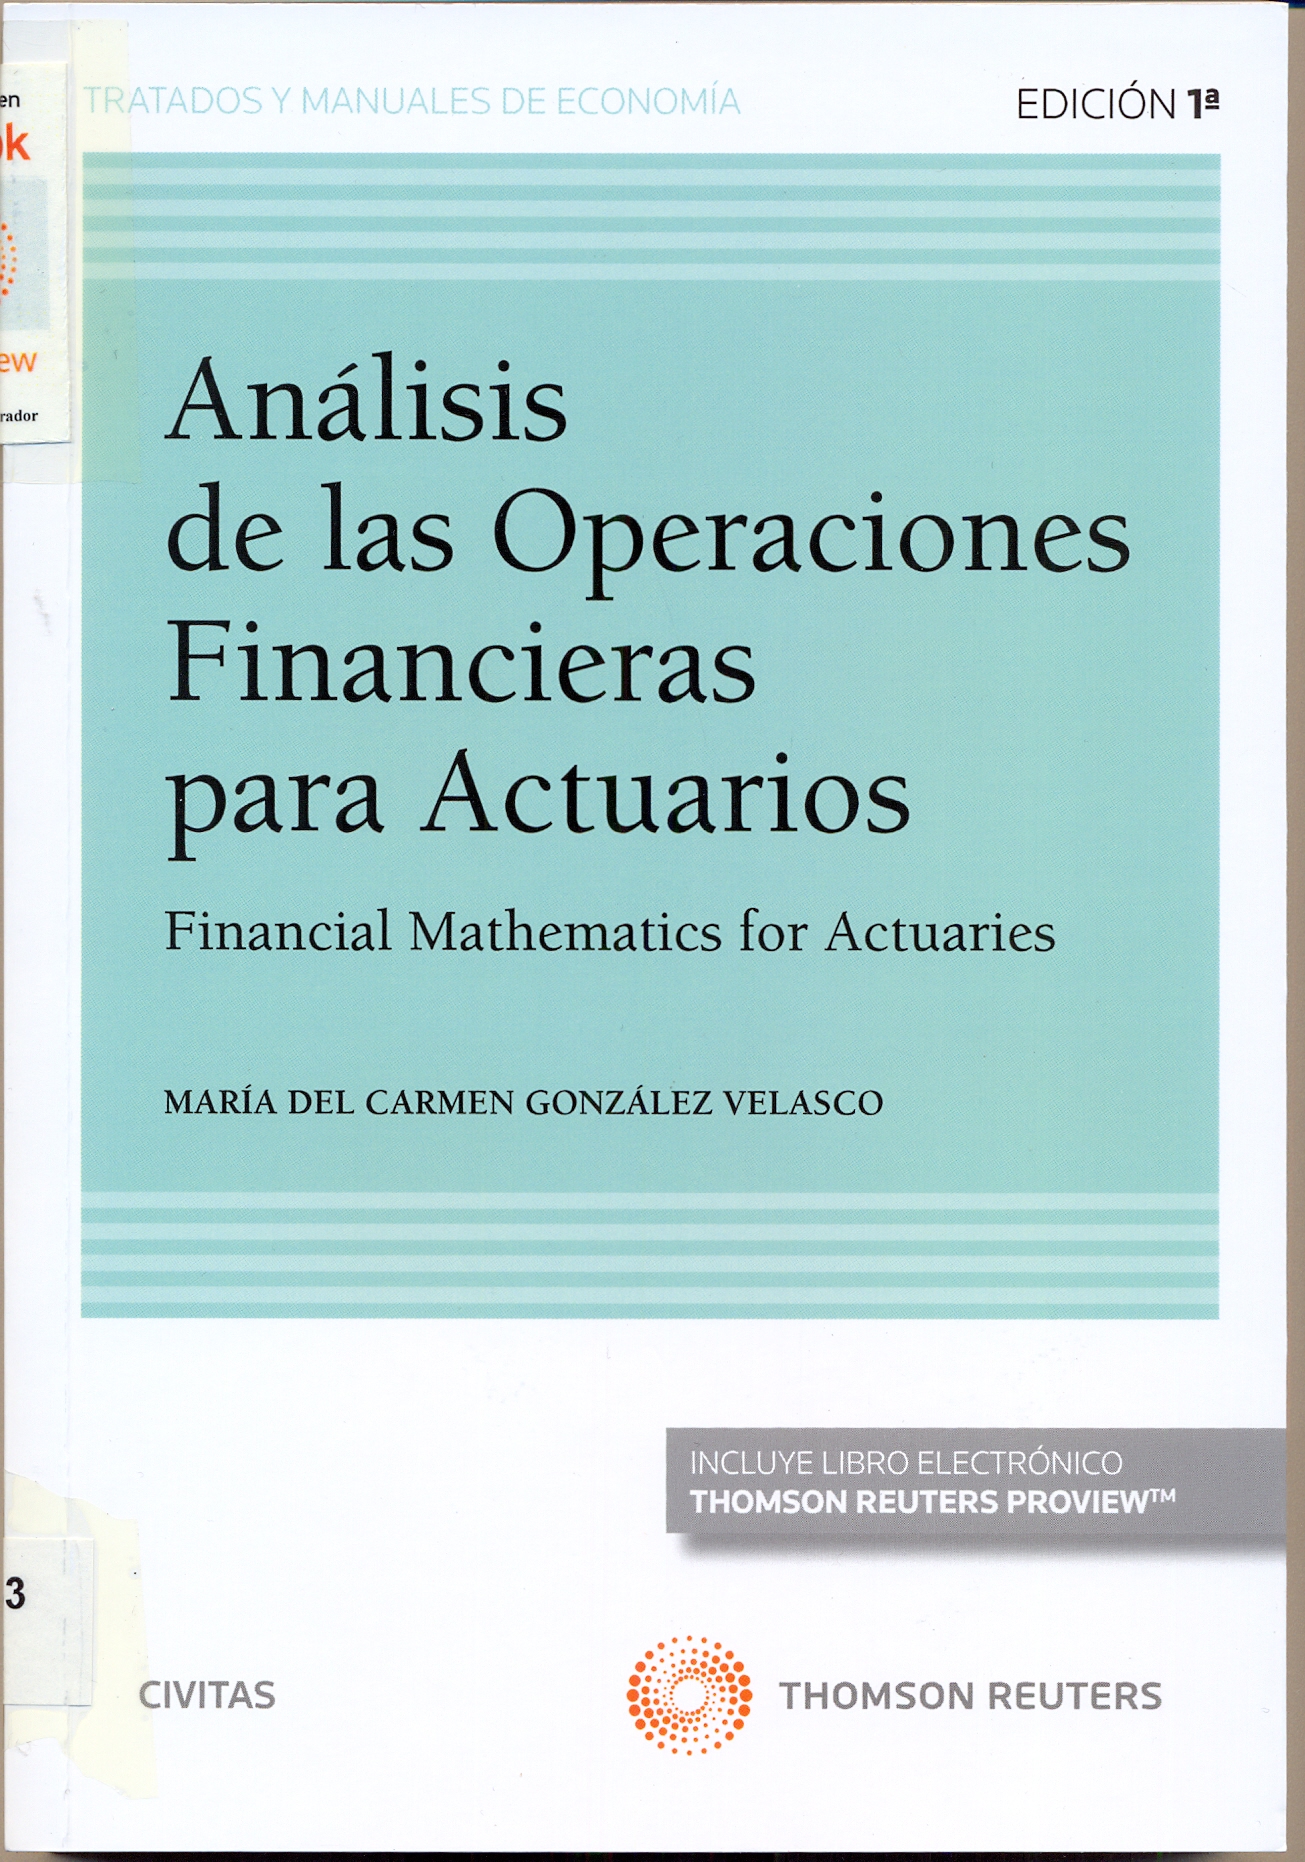 Imagen de portada del libro Análisis de las operaciones financieras para actuarios